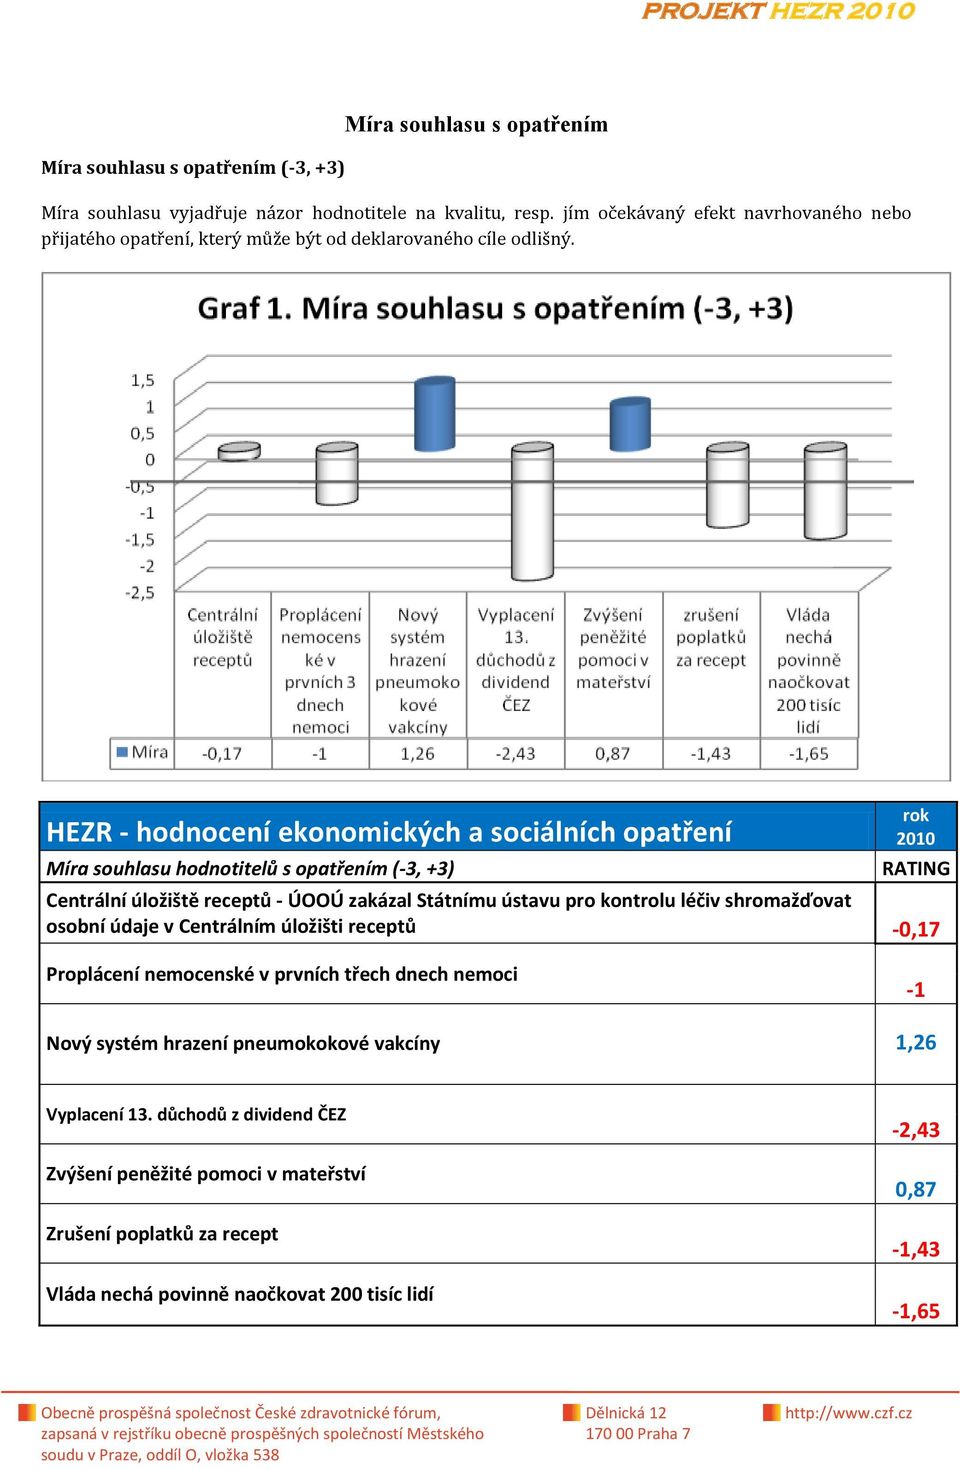 rok 2010 HEZR - hodnocení ekonomických a sociálních opatření Míra souhlasu hodnotitelů s opatřením (-3, +3) Centrální úložiště receptů - ÚOOÚ zakázal Státnímu ústavu pro kontrolu léčiv shromažďovat